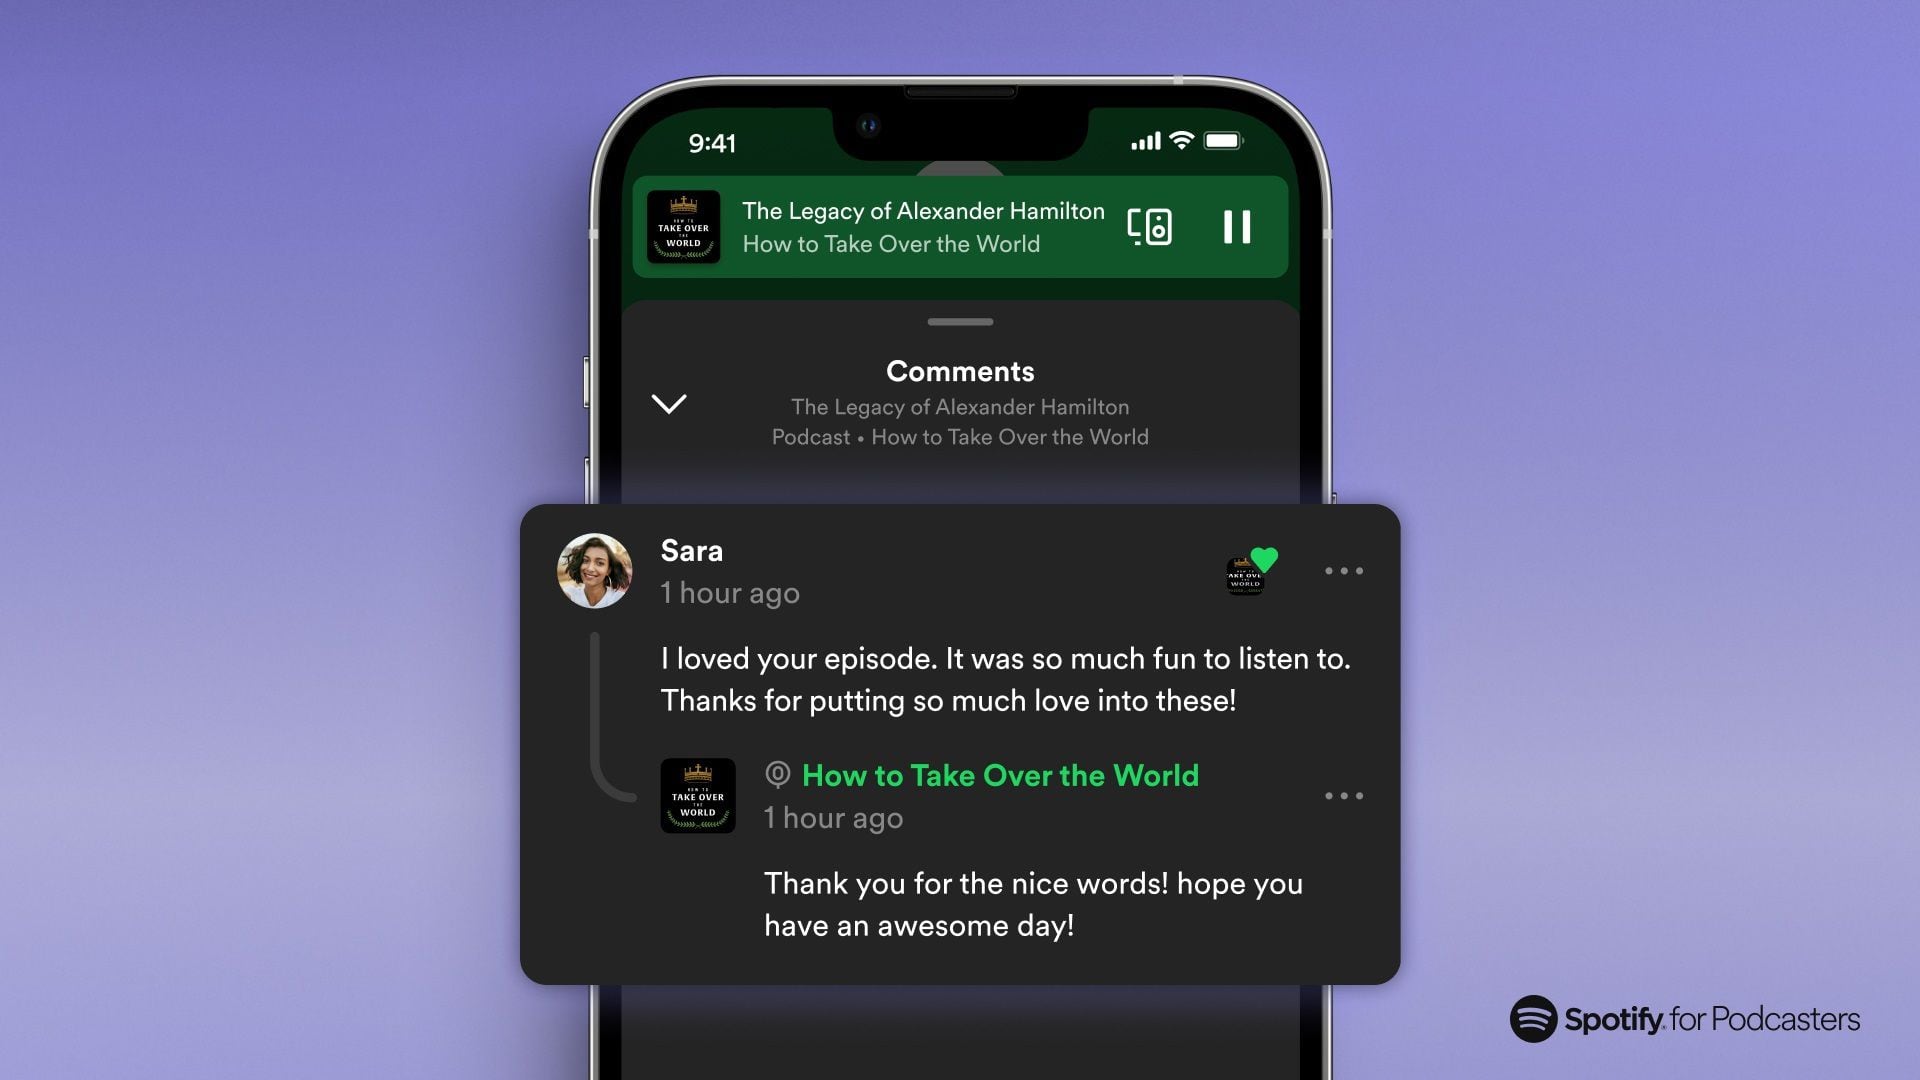 Spotify introduce comentarios en pódcast y una nueva app para podcasters, mejorando la interacción y gestión de contenidos.